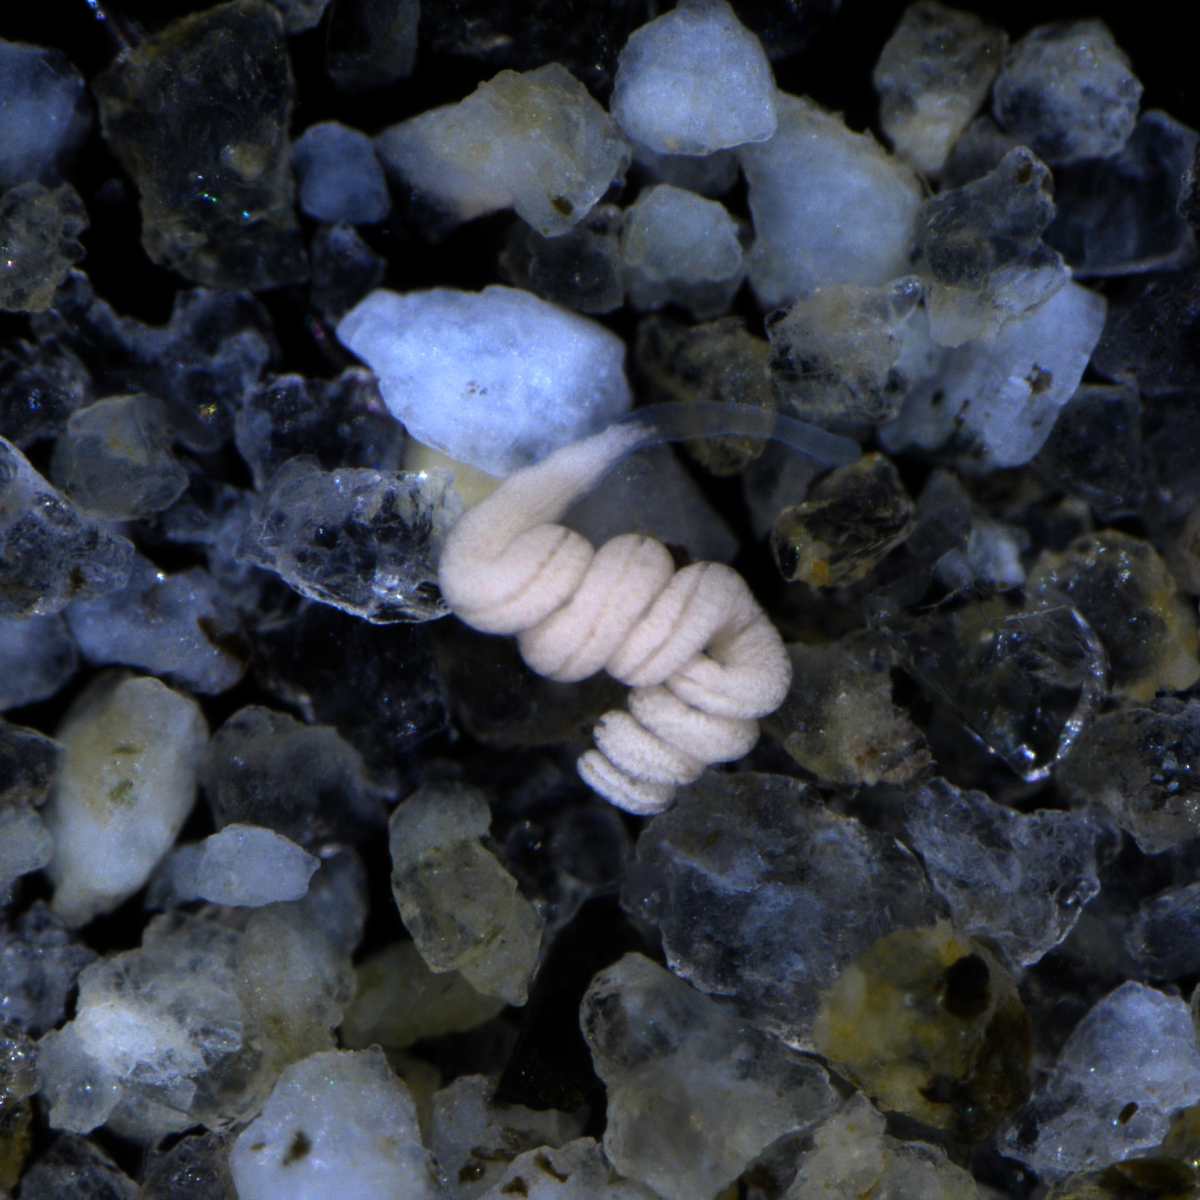 Paracatenula ist ein mariner Plattwurm, der in den Sedimenten warmer Regionen lebt. Man findet ihn rund um den Globus überall dort, wo es Sand unter geschützten Bedingungen gibt – beispielsweise in Seegraswiesen, Korallenriffen oder Mangroven. Die weiße Färbung von Paracatenula ist ihren symbiotischen Bakterien zu verdanken, denn diese tragen eine Vielfalt von Speicherstoffen in sich. © Oliver Jäckle/Max-Planck-Institut für Marine Mikrobiologie